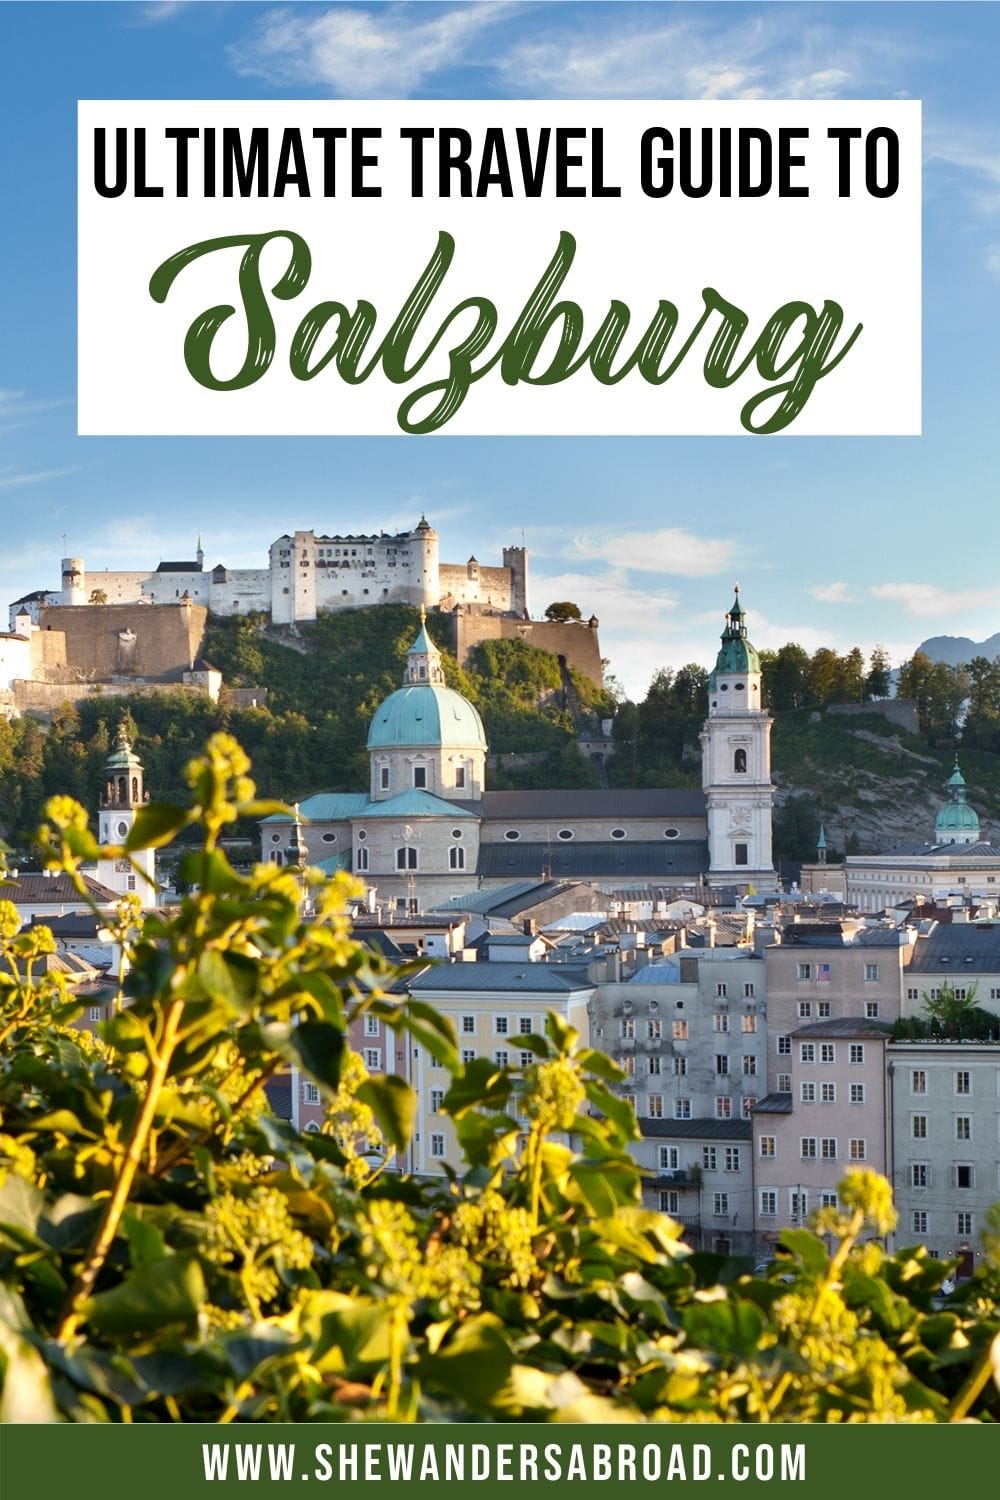 Como Passar Um Dia em Salzburg, Áustria